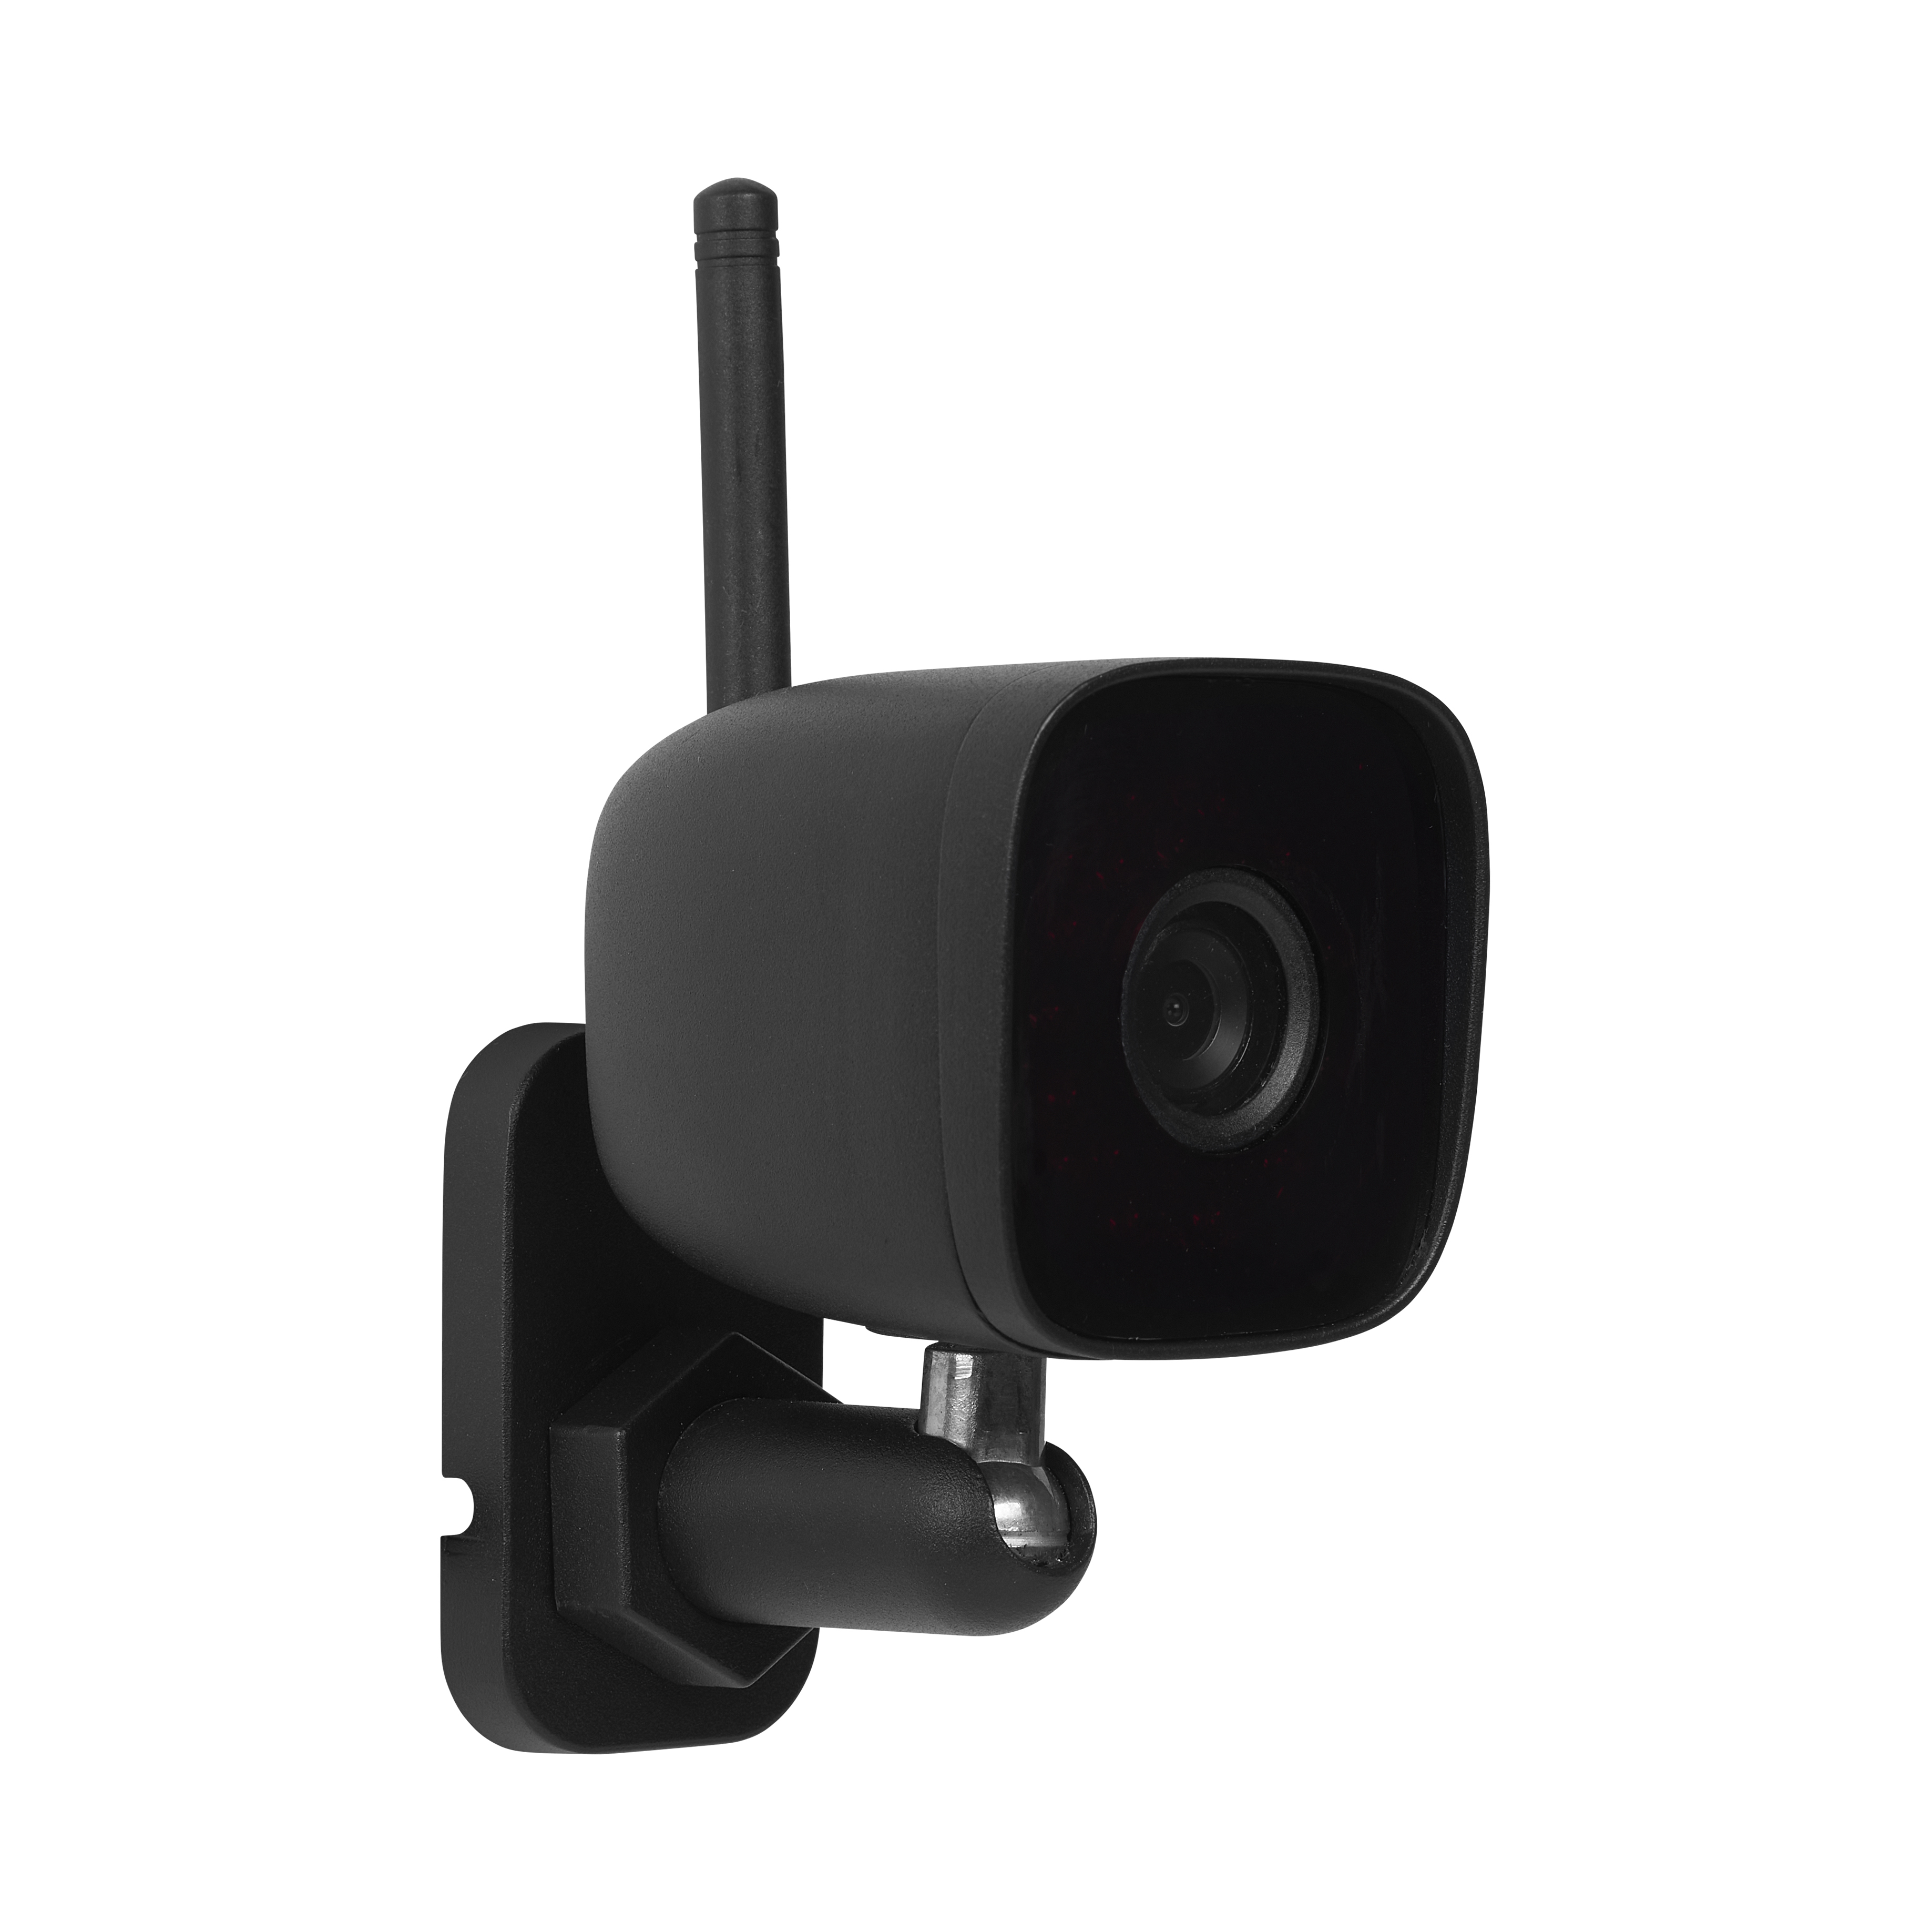 Smartwares CIP-39330 Mini outdoor camera